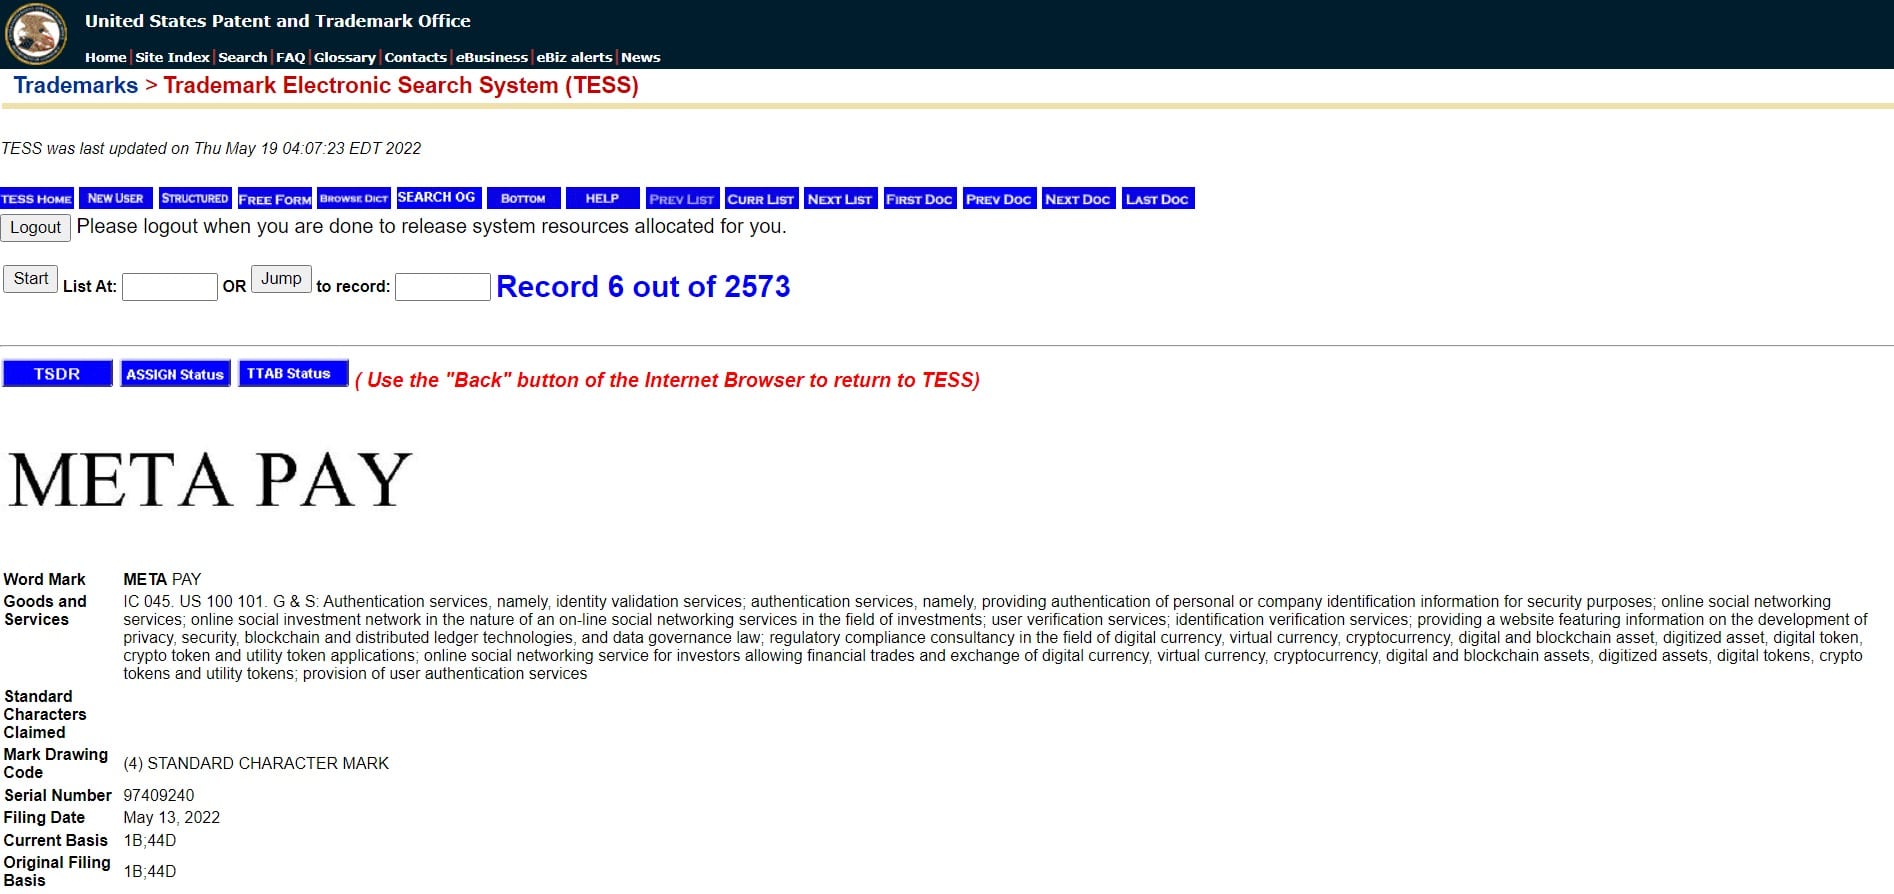 L'enregistrement de la marque Meta Pay sur le site Web du United States Patent and Trademark Office